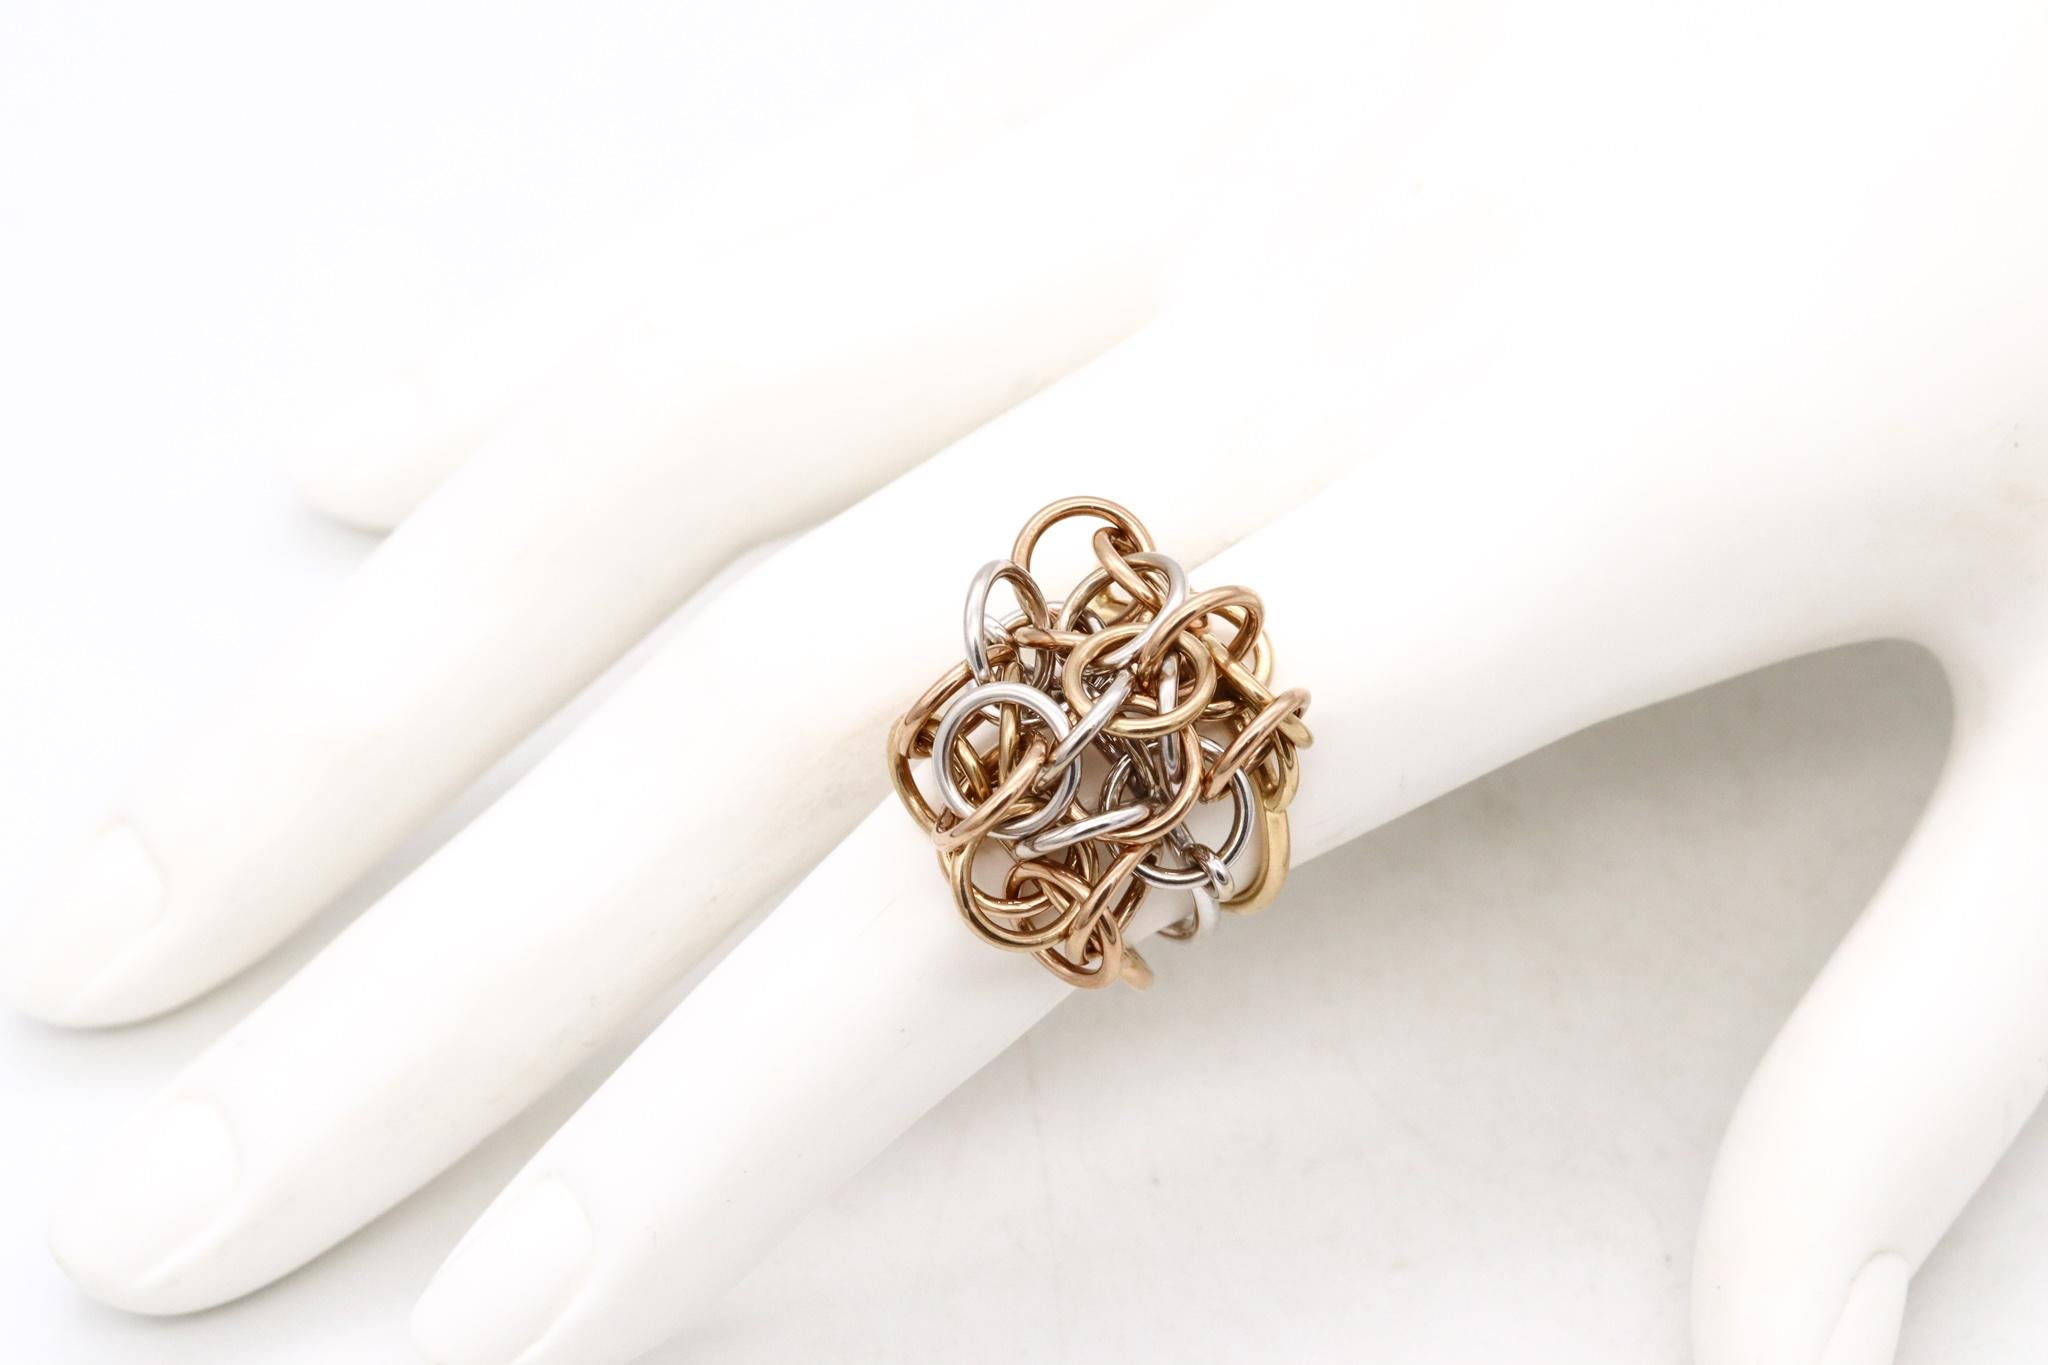 Seltener kinetischer Ring, entworfen von Hermes.

Ein geometrischer Ring aus den 1980er Jahren, hergestellt in Paris, Frankreich. Sie wurde vom Haus Hermes aus massivem 18-karätigem Gelb- und Weißgold gefertigt.

Dieses kinetische Design besteht aus